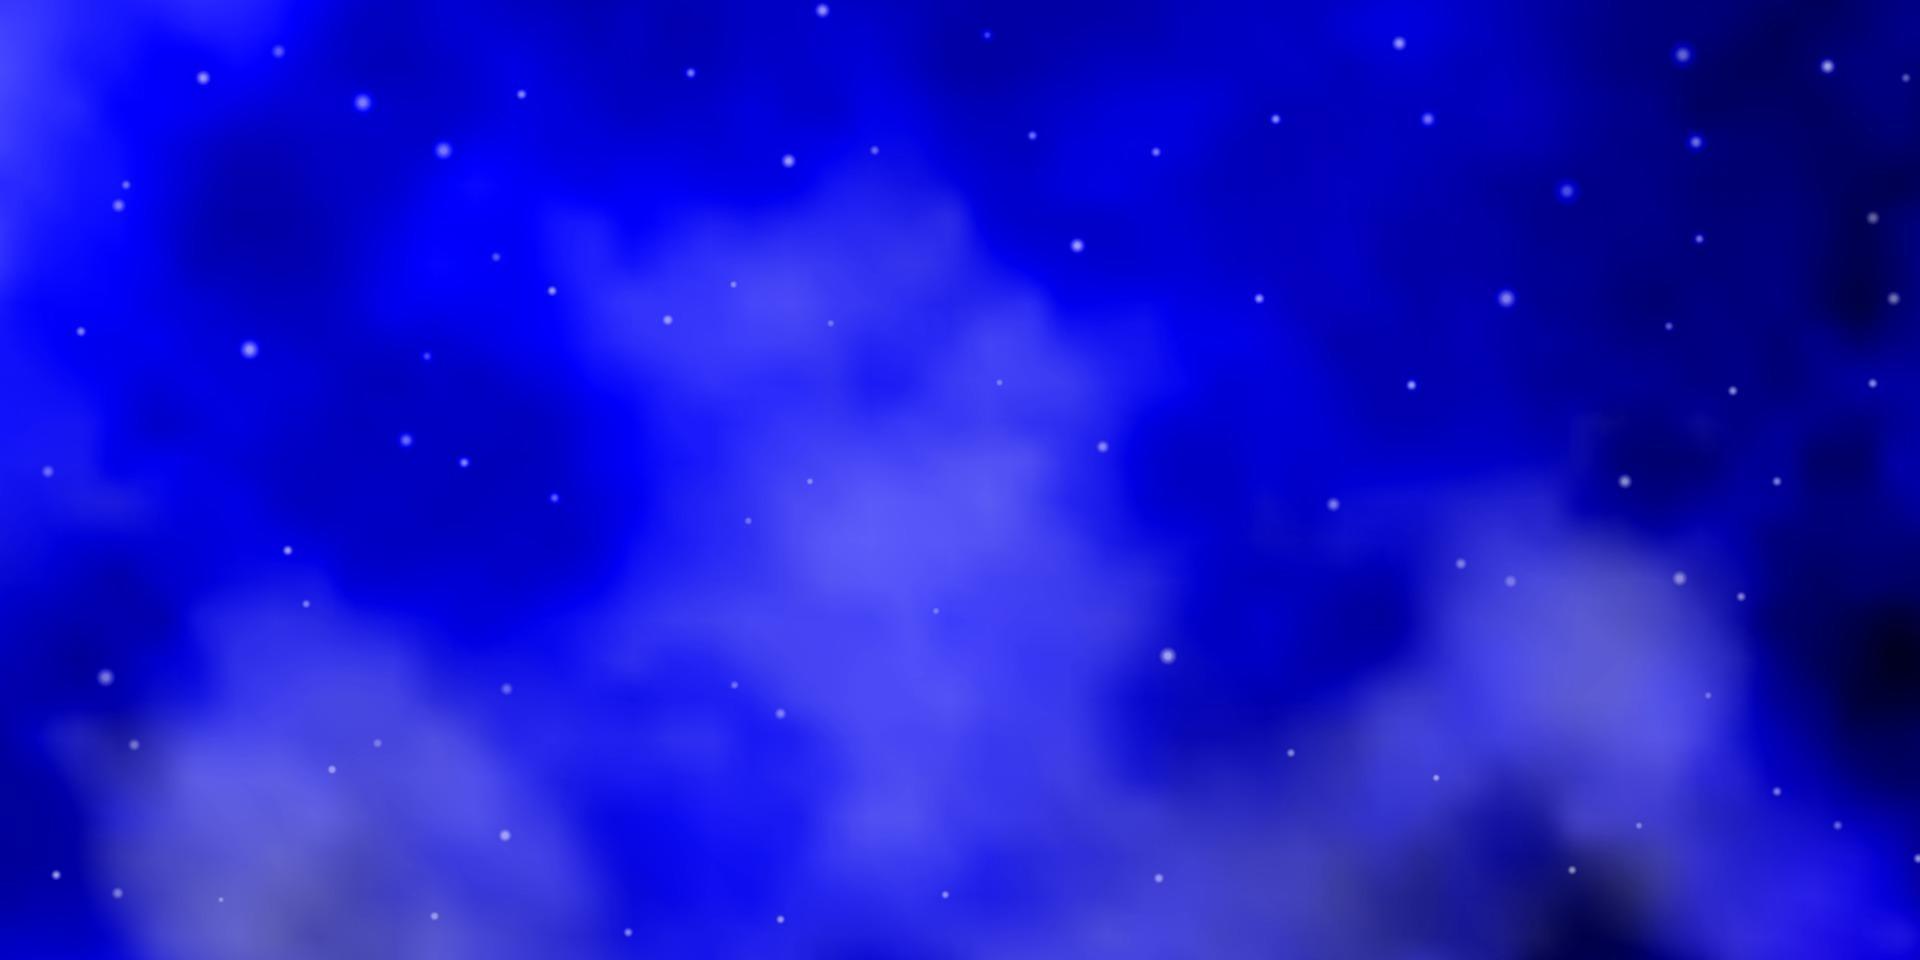 sfondo vettoriale blu scuro con stelle colorate.